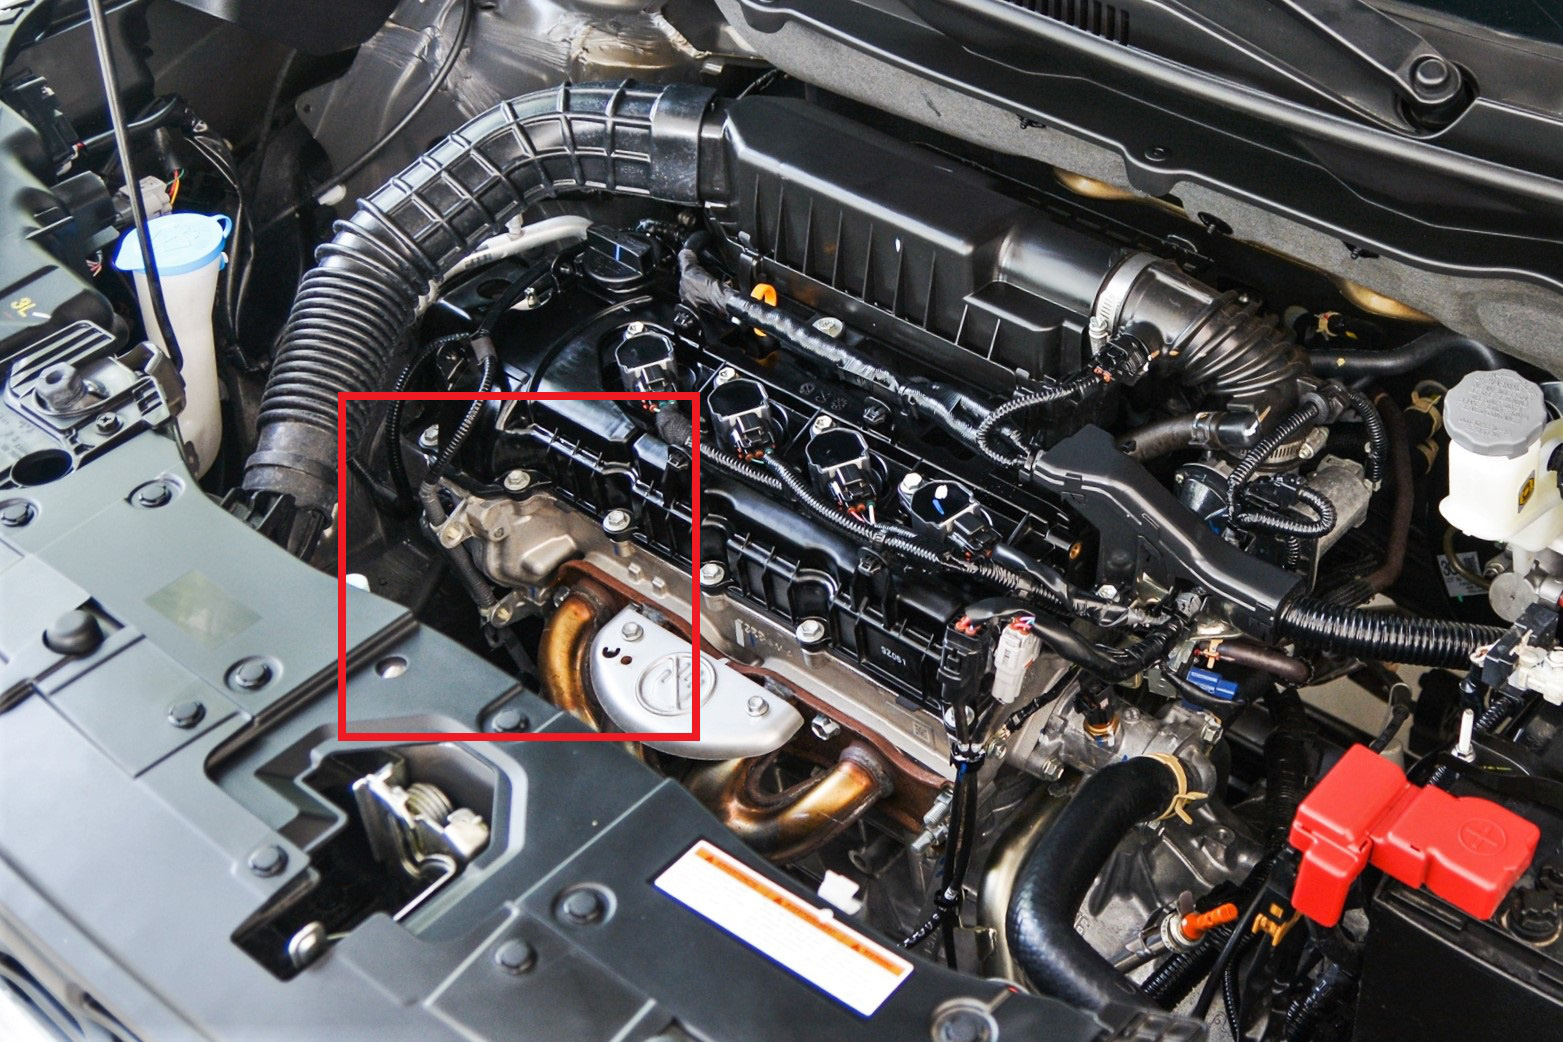 Suzuki XL7 có hiện tượng thấm dầu tại Việt Nam, hãng xe Nhật nói gì? - Ảnh 4.